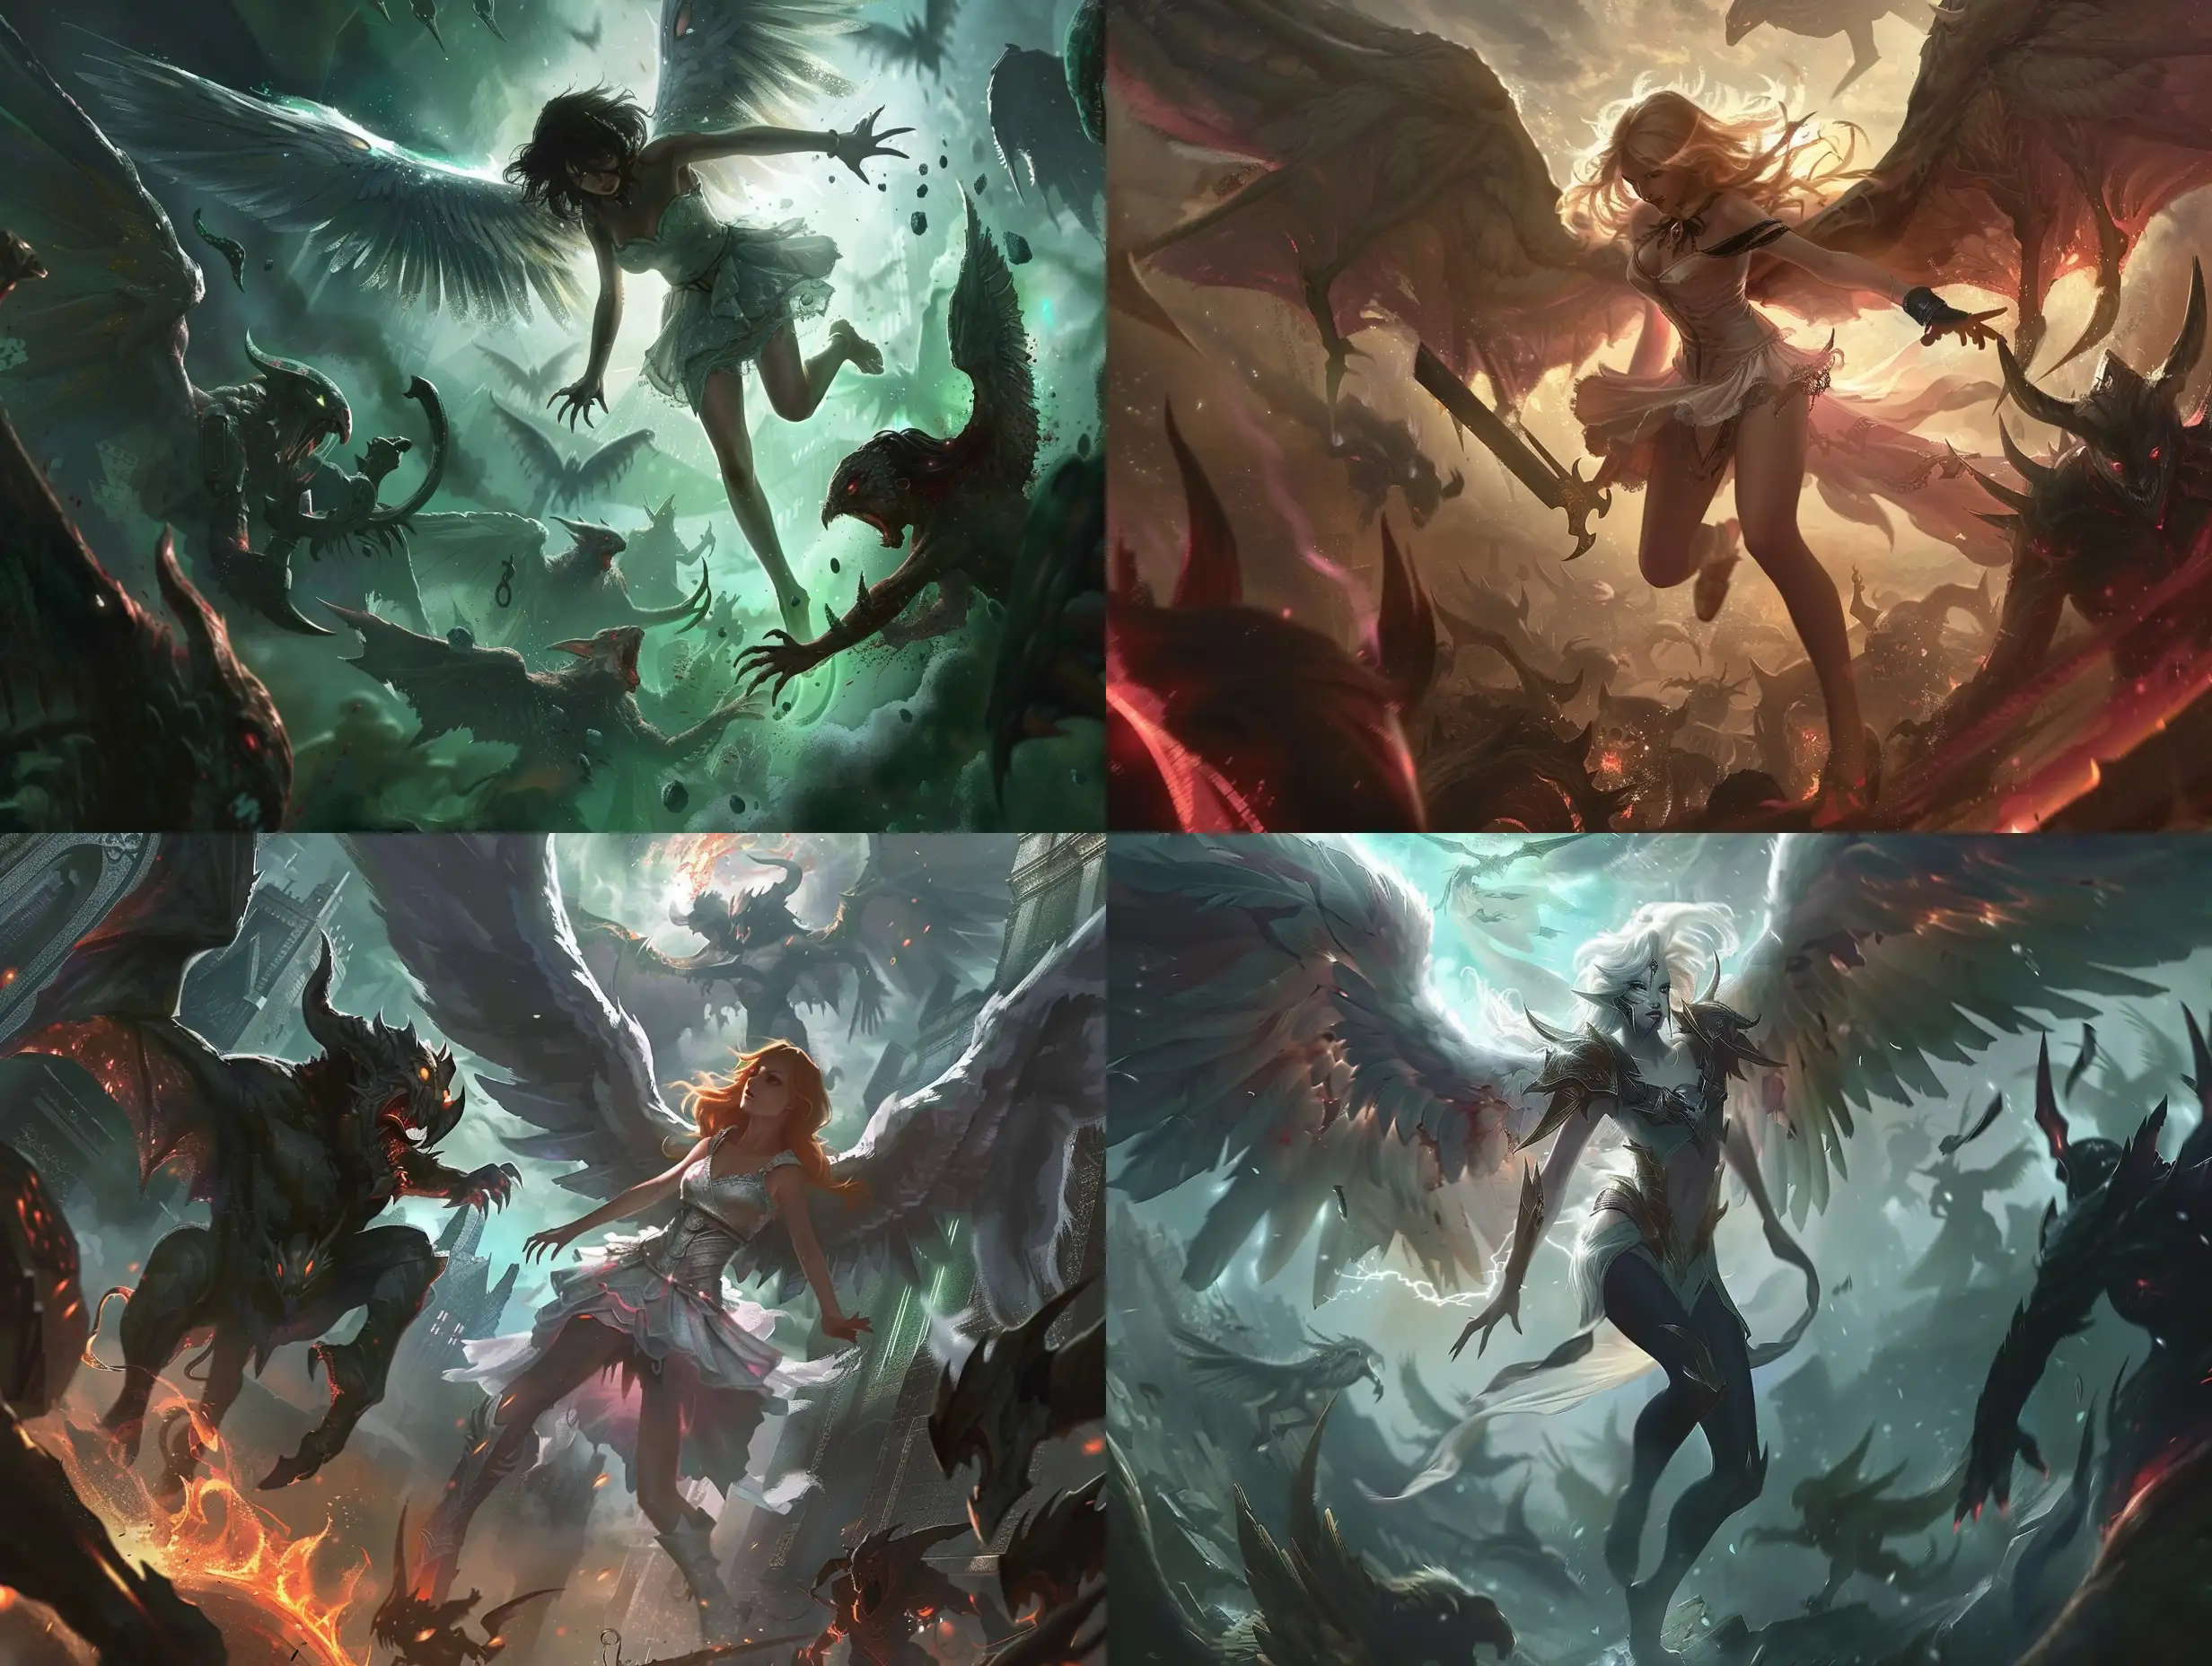 Angel-Girl-Battling-Demon-Creatures-in-League-of-Legends-Splash-Art-Style